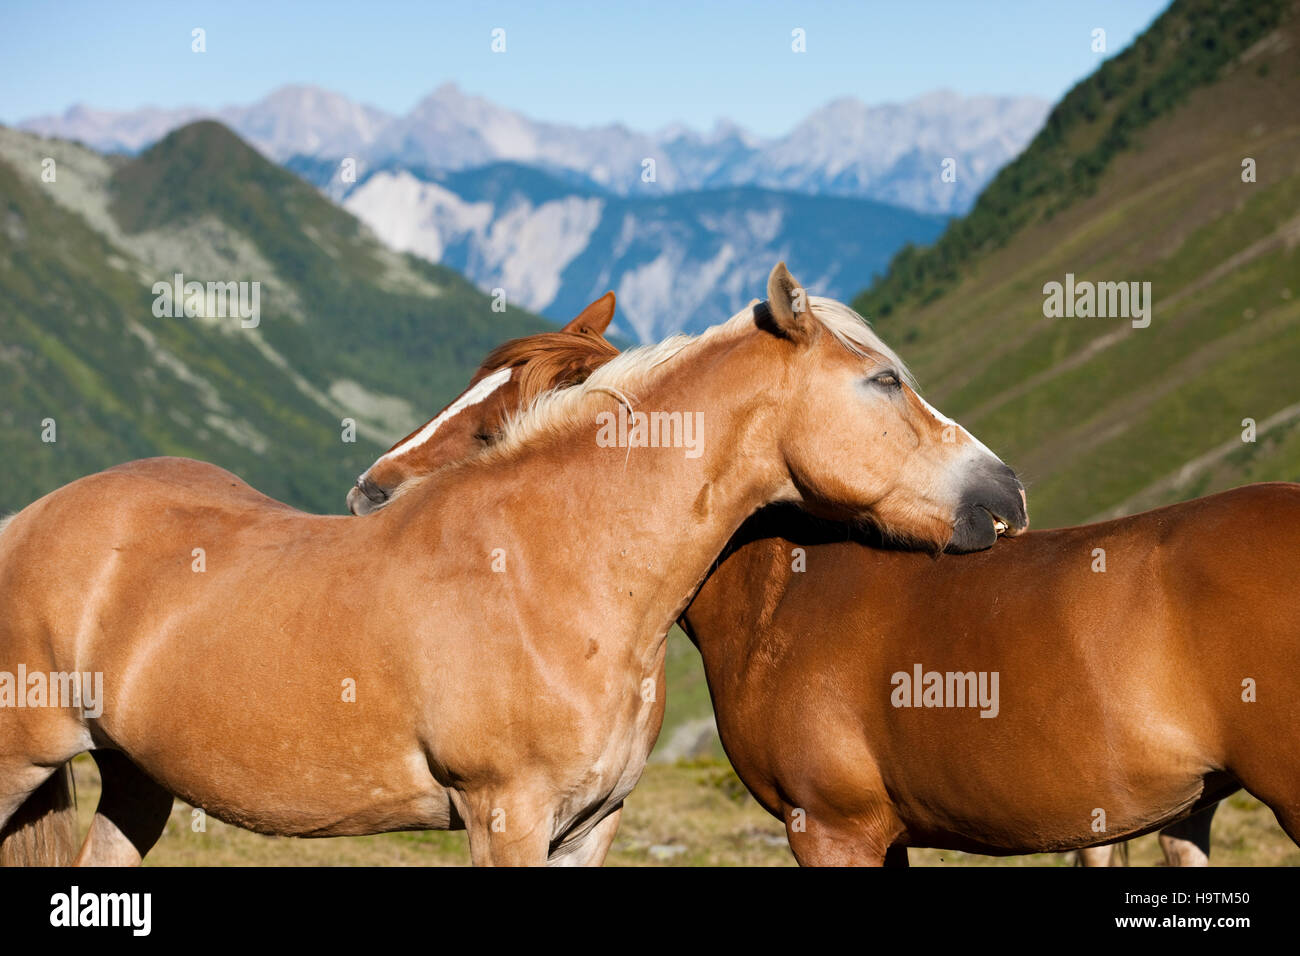 Le toilettage des chevaux Haflinger Kühtai, Tyrol, Autriche Banque D'Images